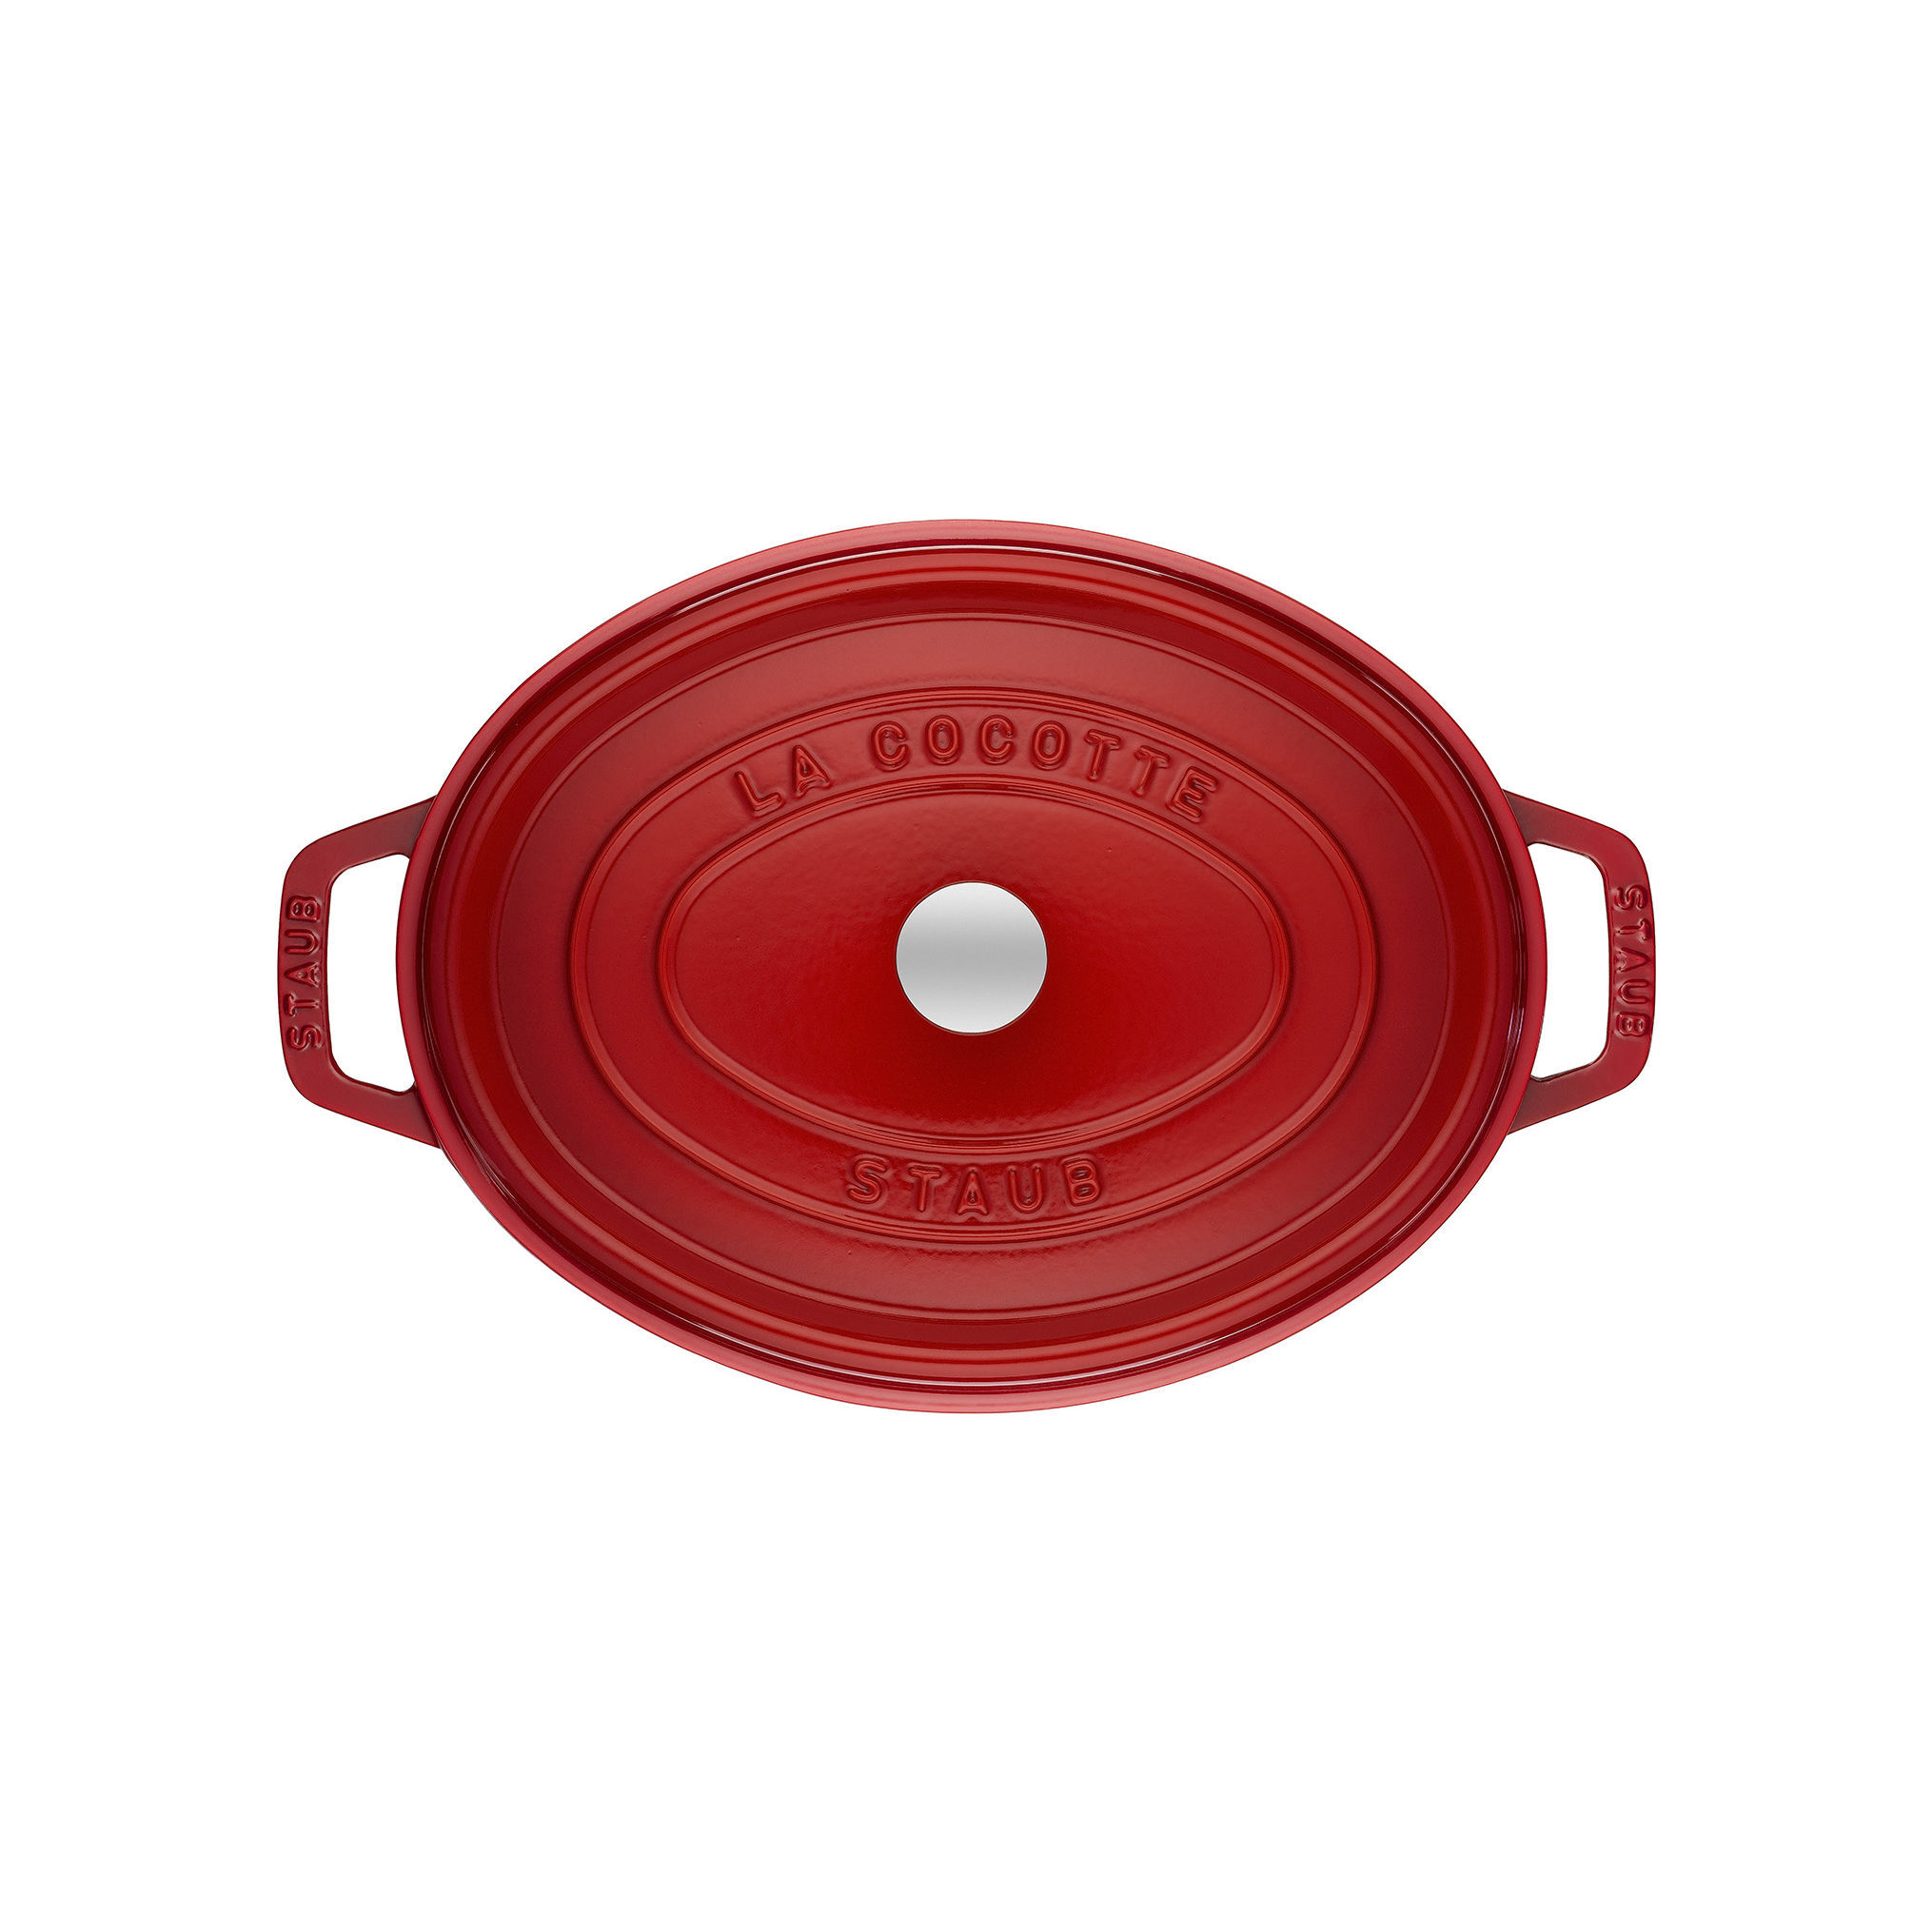 小売価格 【新品同様】ストウブ 「 ピコ ココット オーバル チェリー 31cm 」 調理器具